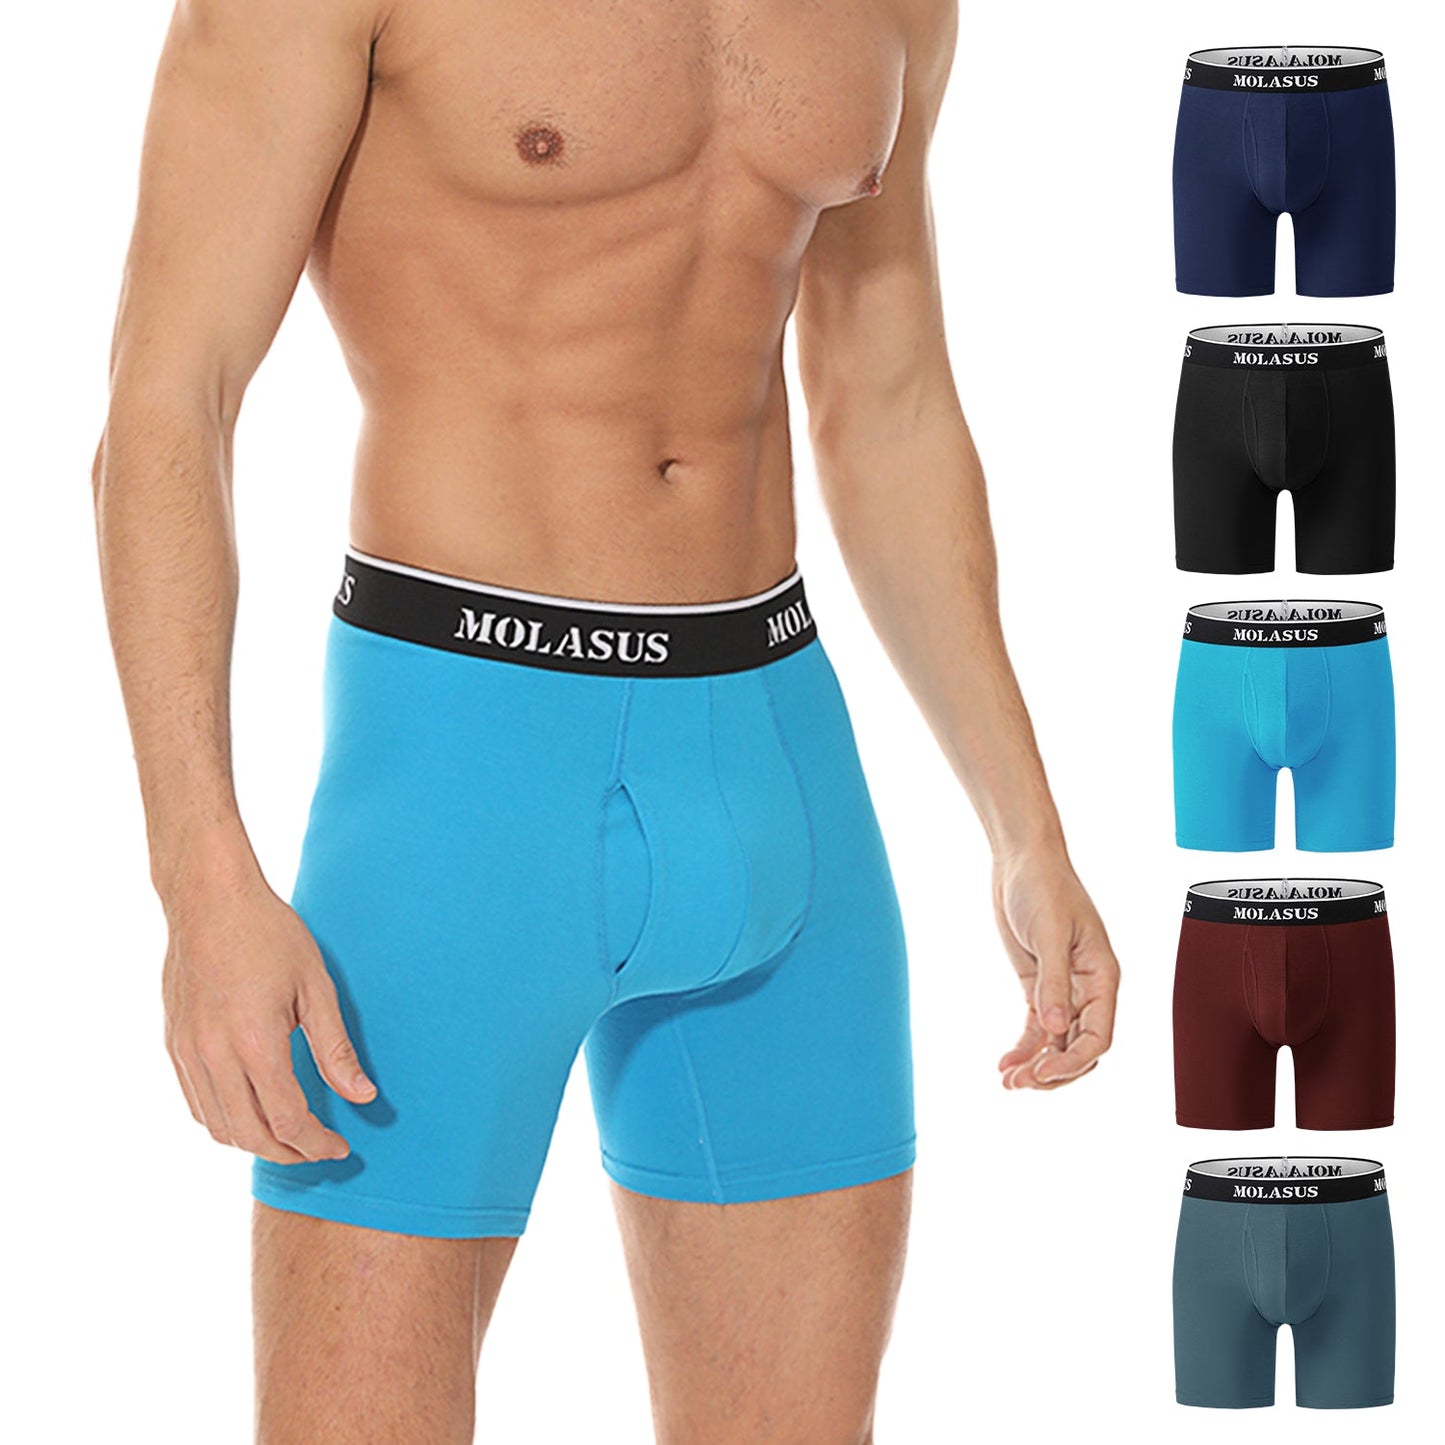  ULTRA SUPER SOFT BB FLY, Desert Mosaic- Multi - men's  underwear - SAXX - 25.90 € - outdoorové oblečení a vybavení shop